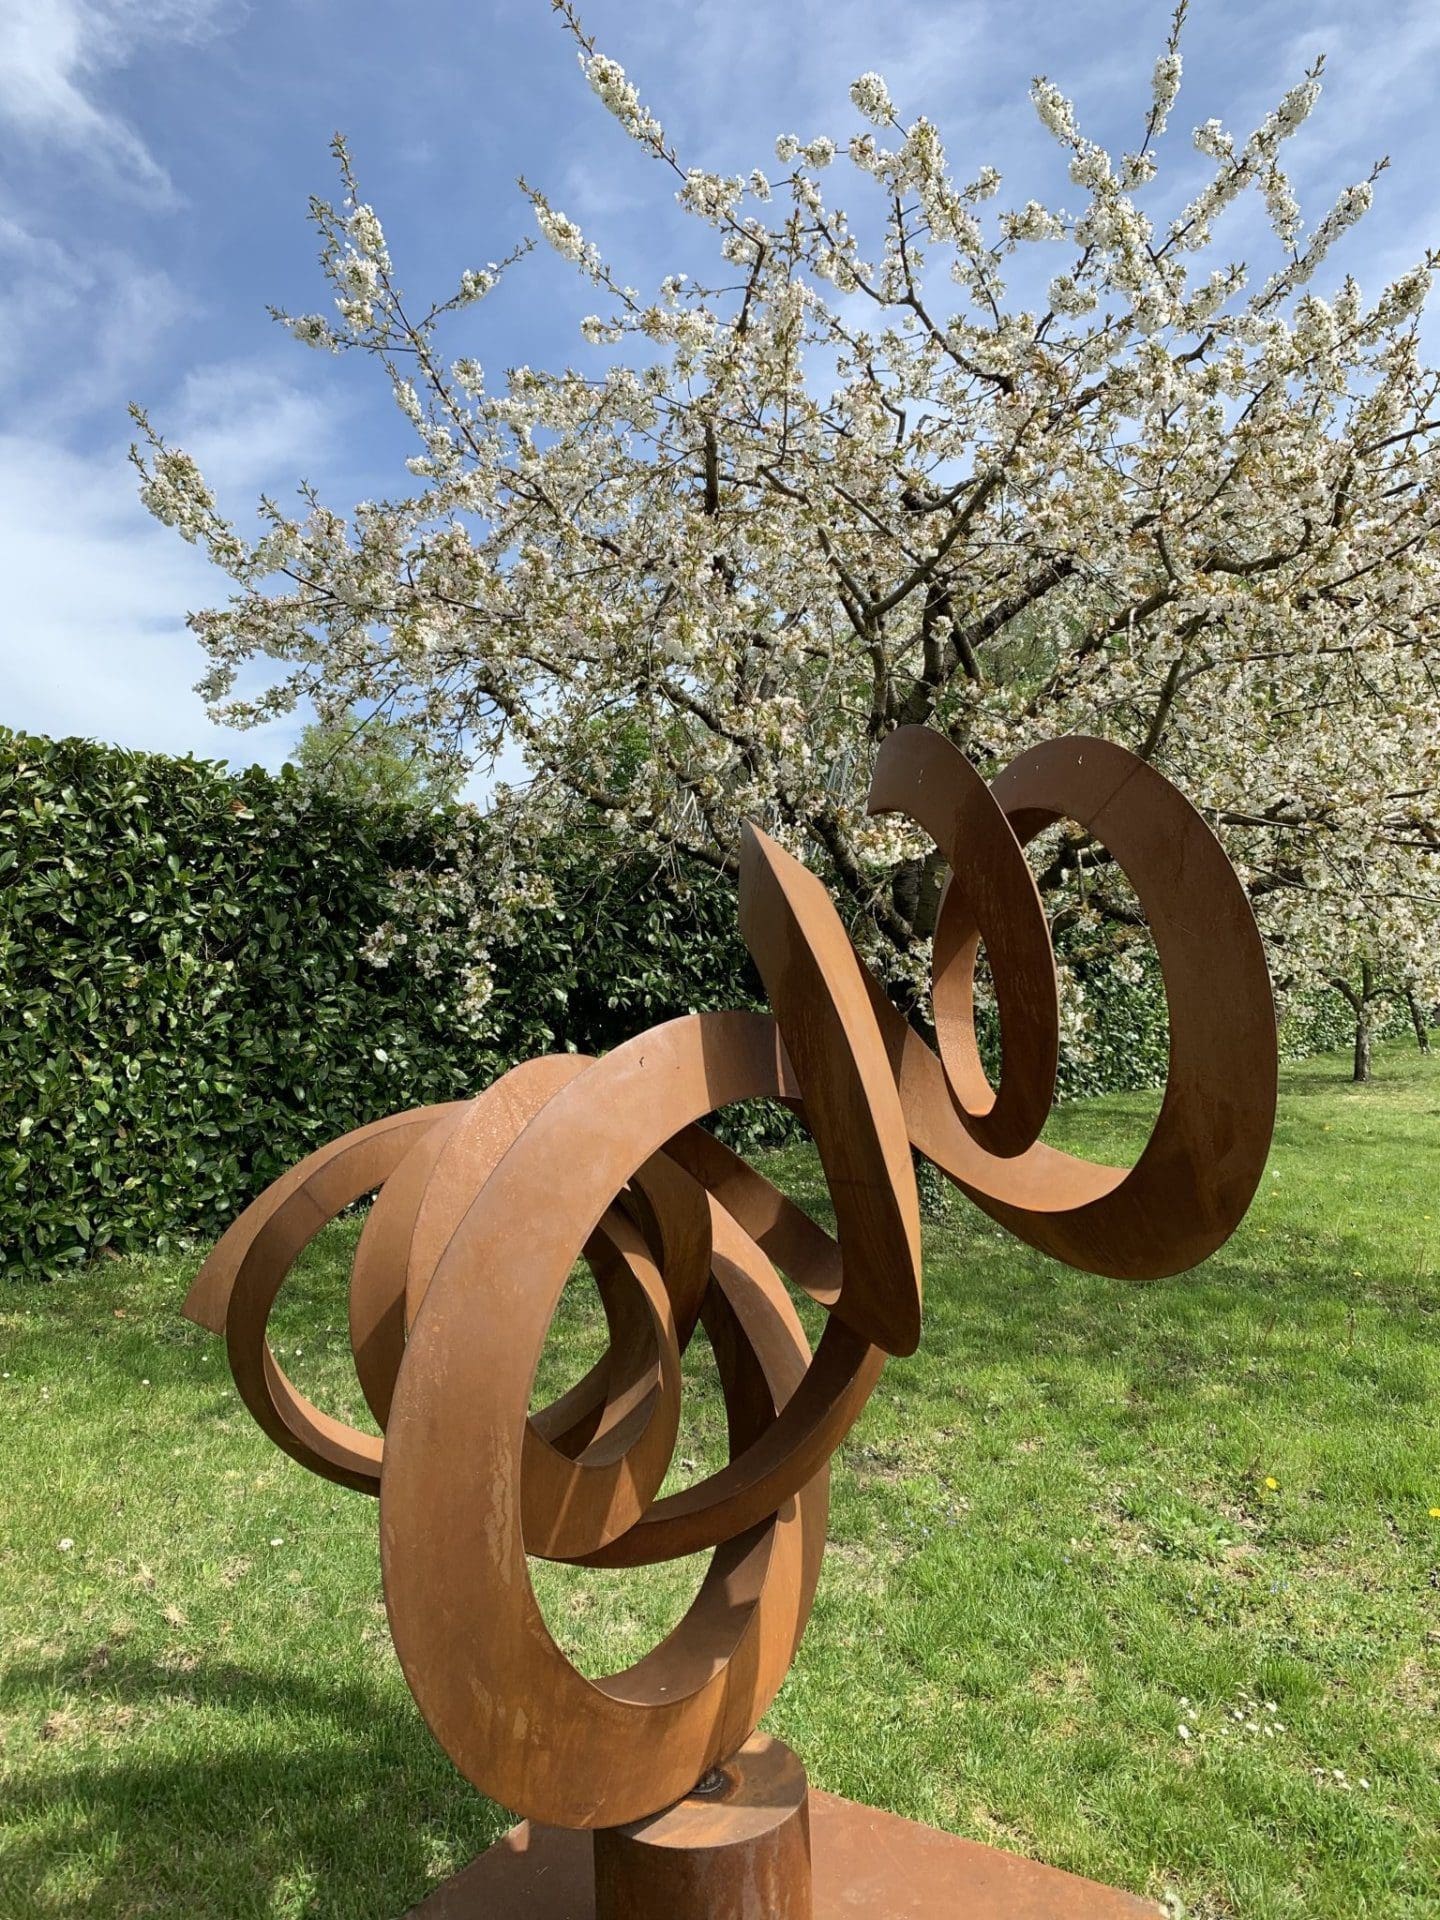 Sculpture de Pieter Obels entouré d'arbres en fleurs.